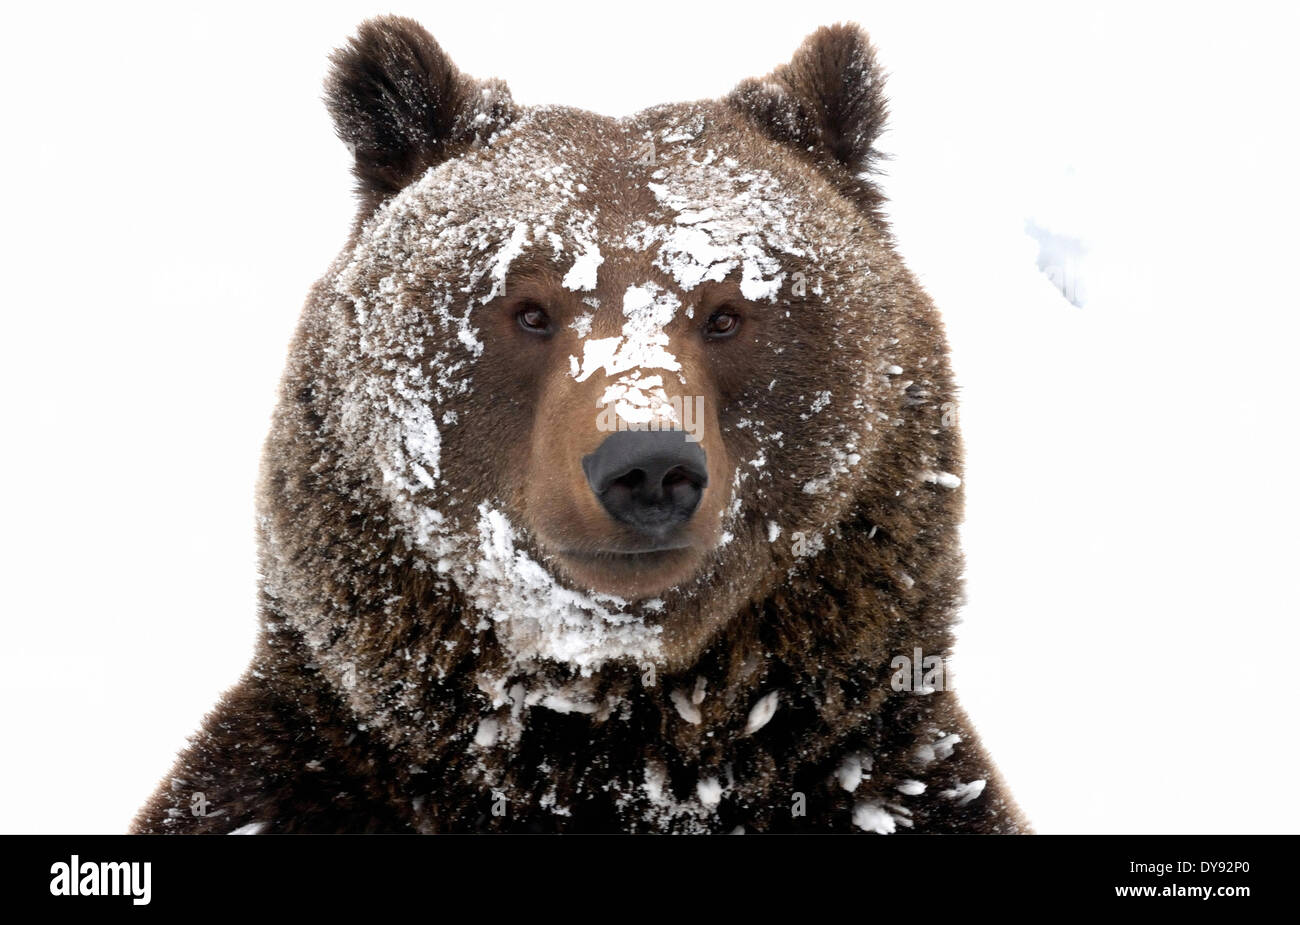 Ours brun ours ours brun européen européen prédateur Ursus arctos Ursus hiver neige hiver furtivement de l'ours, animal animaux Banque D'Images